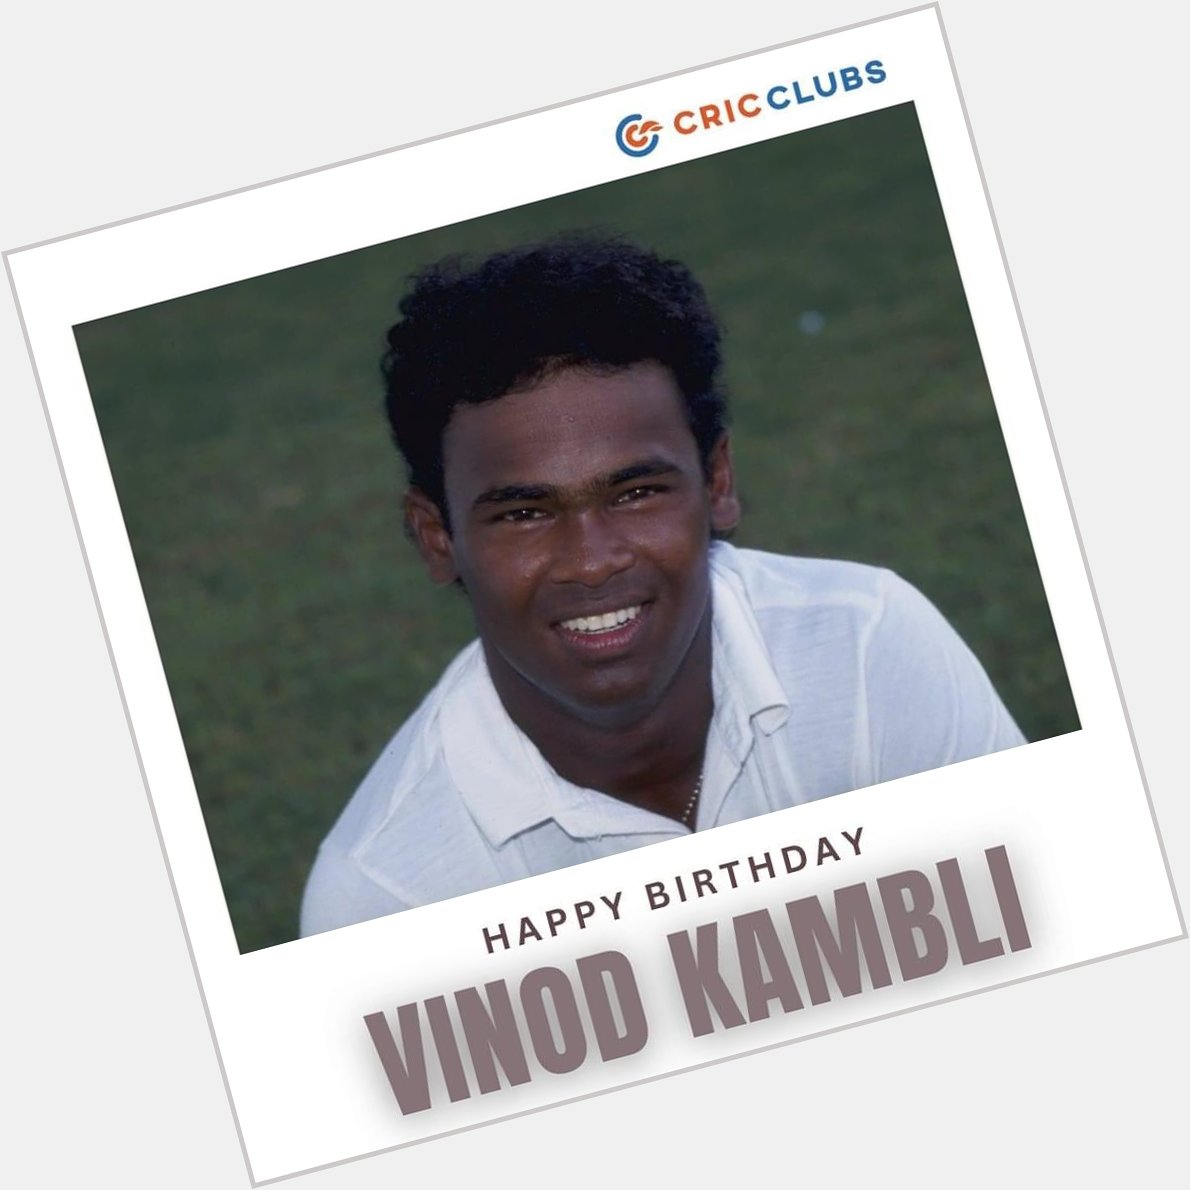   Happy Birthday Vinod Kambli    